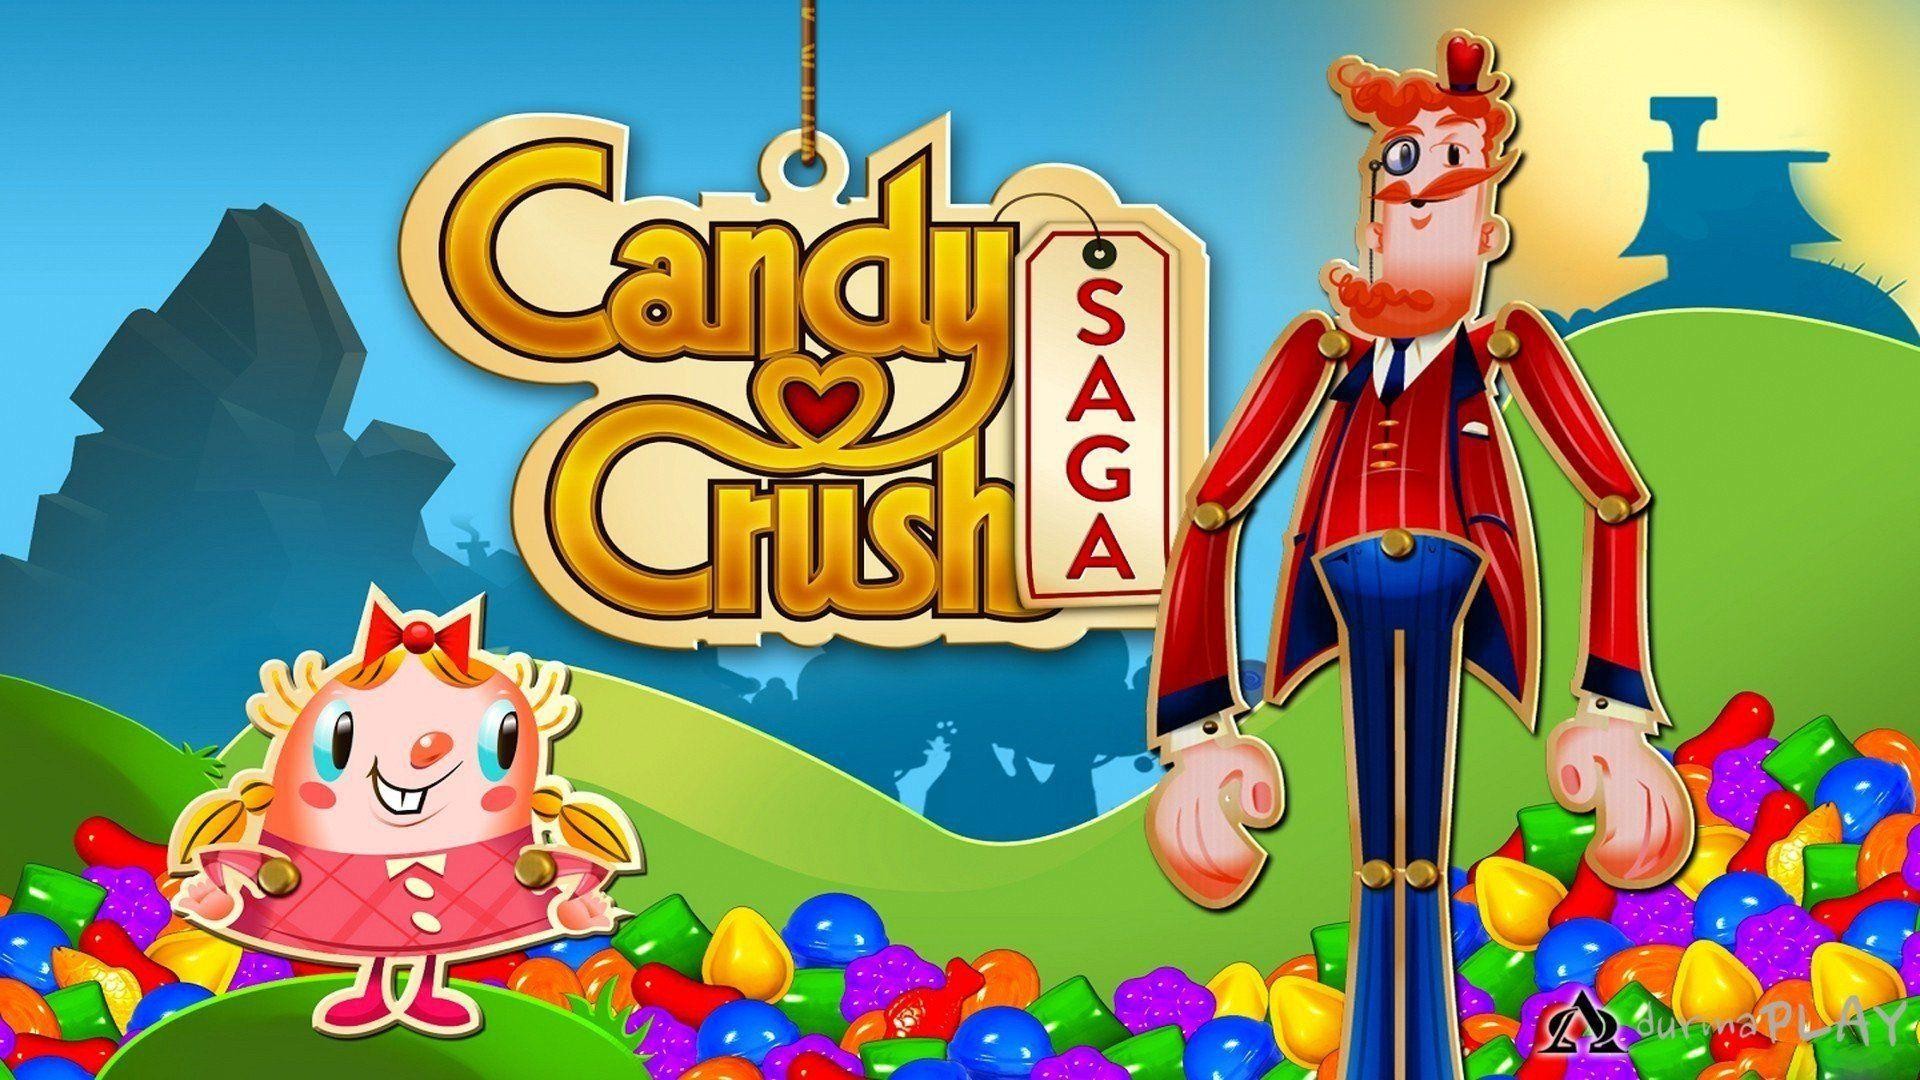 Candy Crush - Jogo Online - Joga Agora